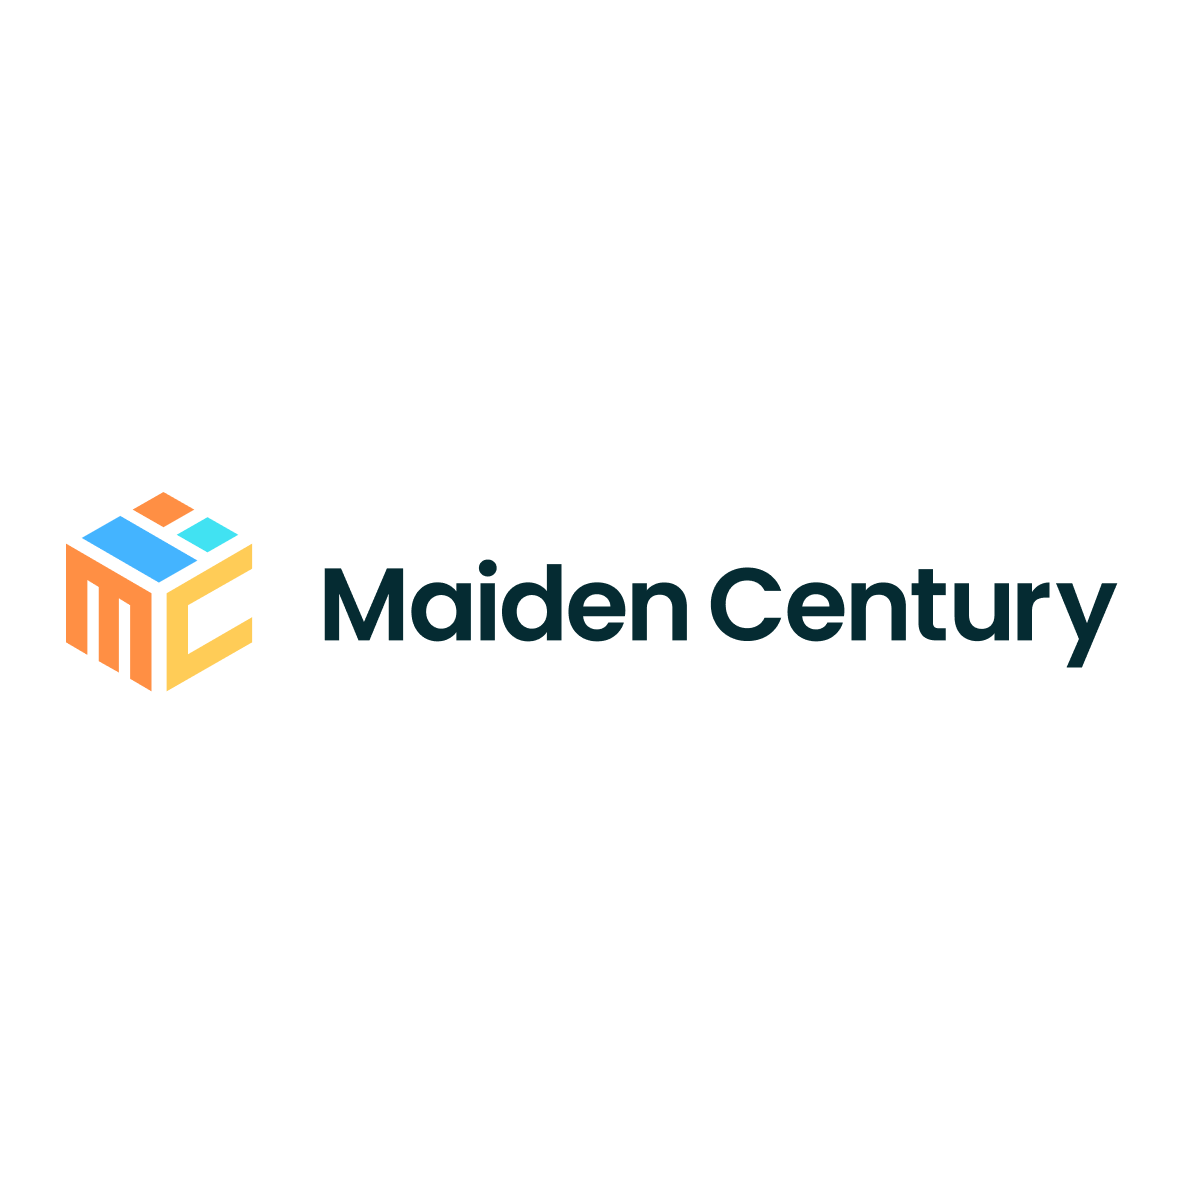 Maiden Century - 